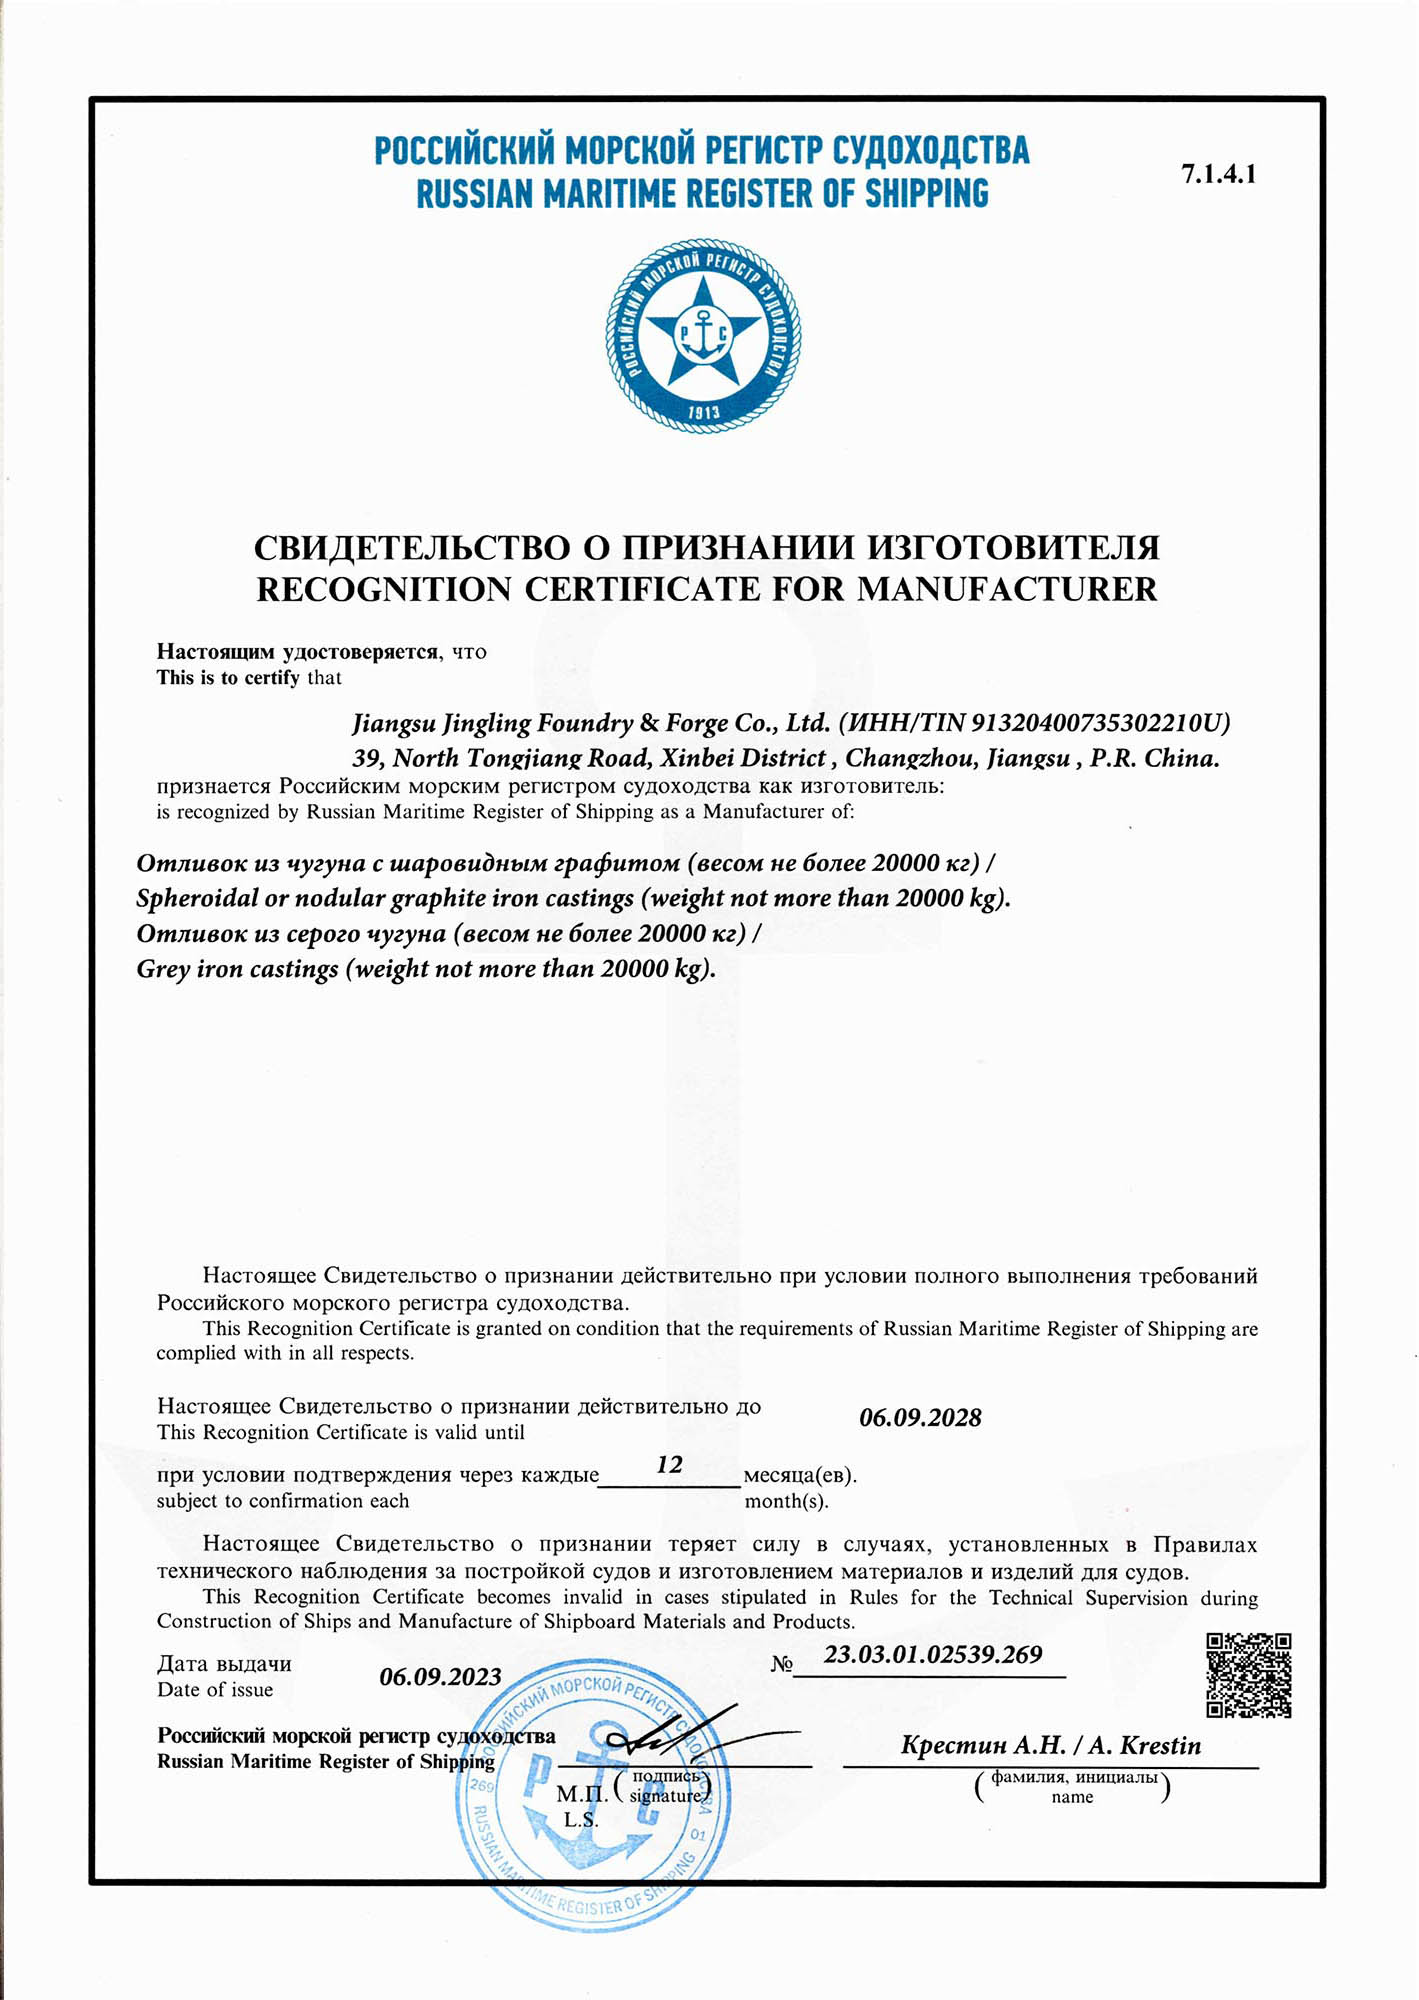 俄罗斯RS船级社认证证书